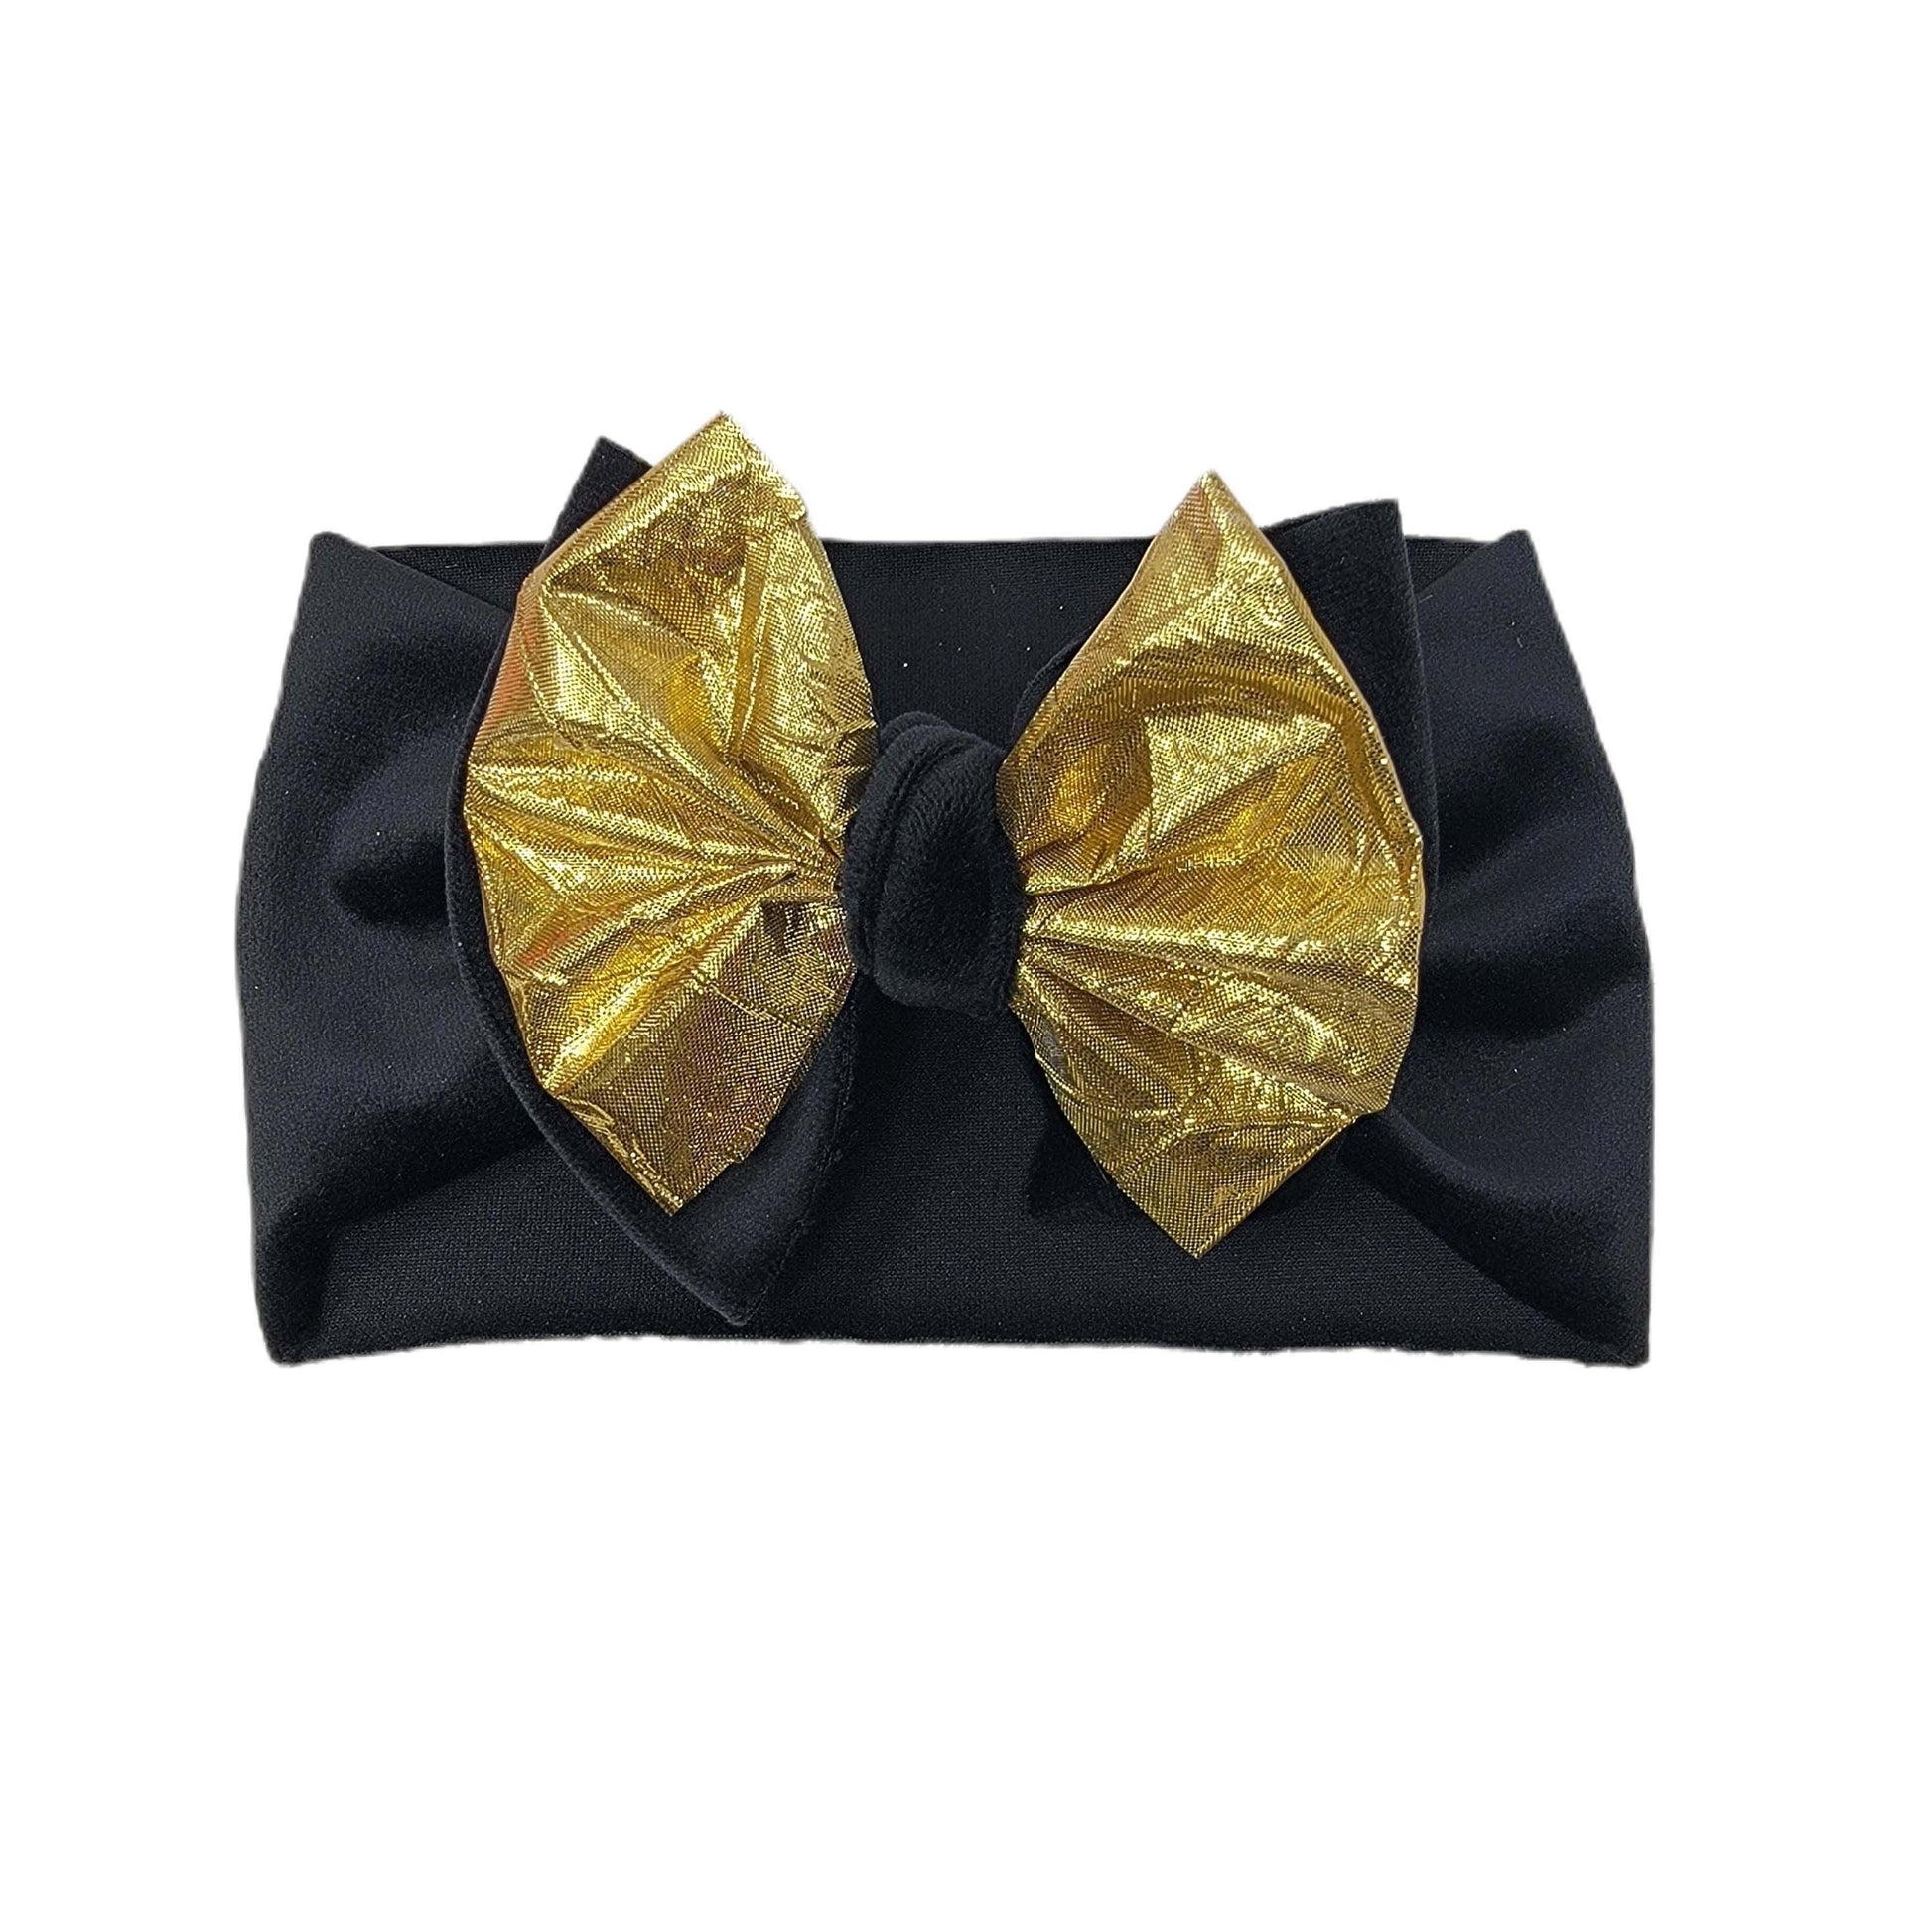 Gold Foil & Black Velvet Double Stack Fabric Headwrap